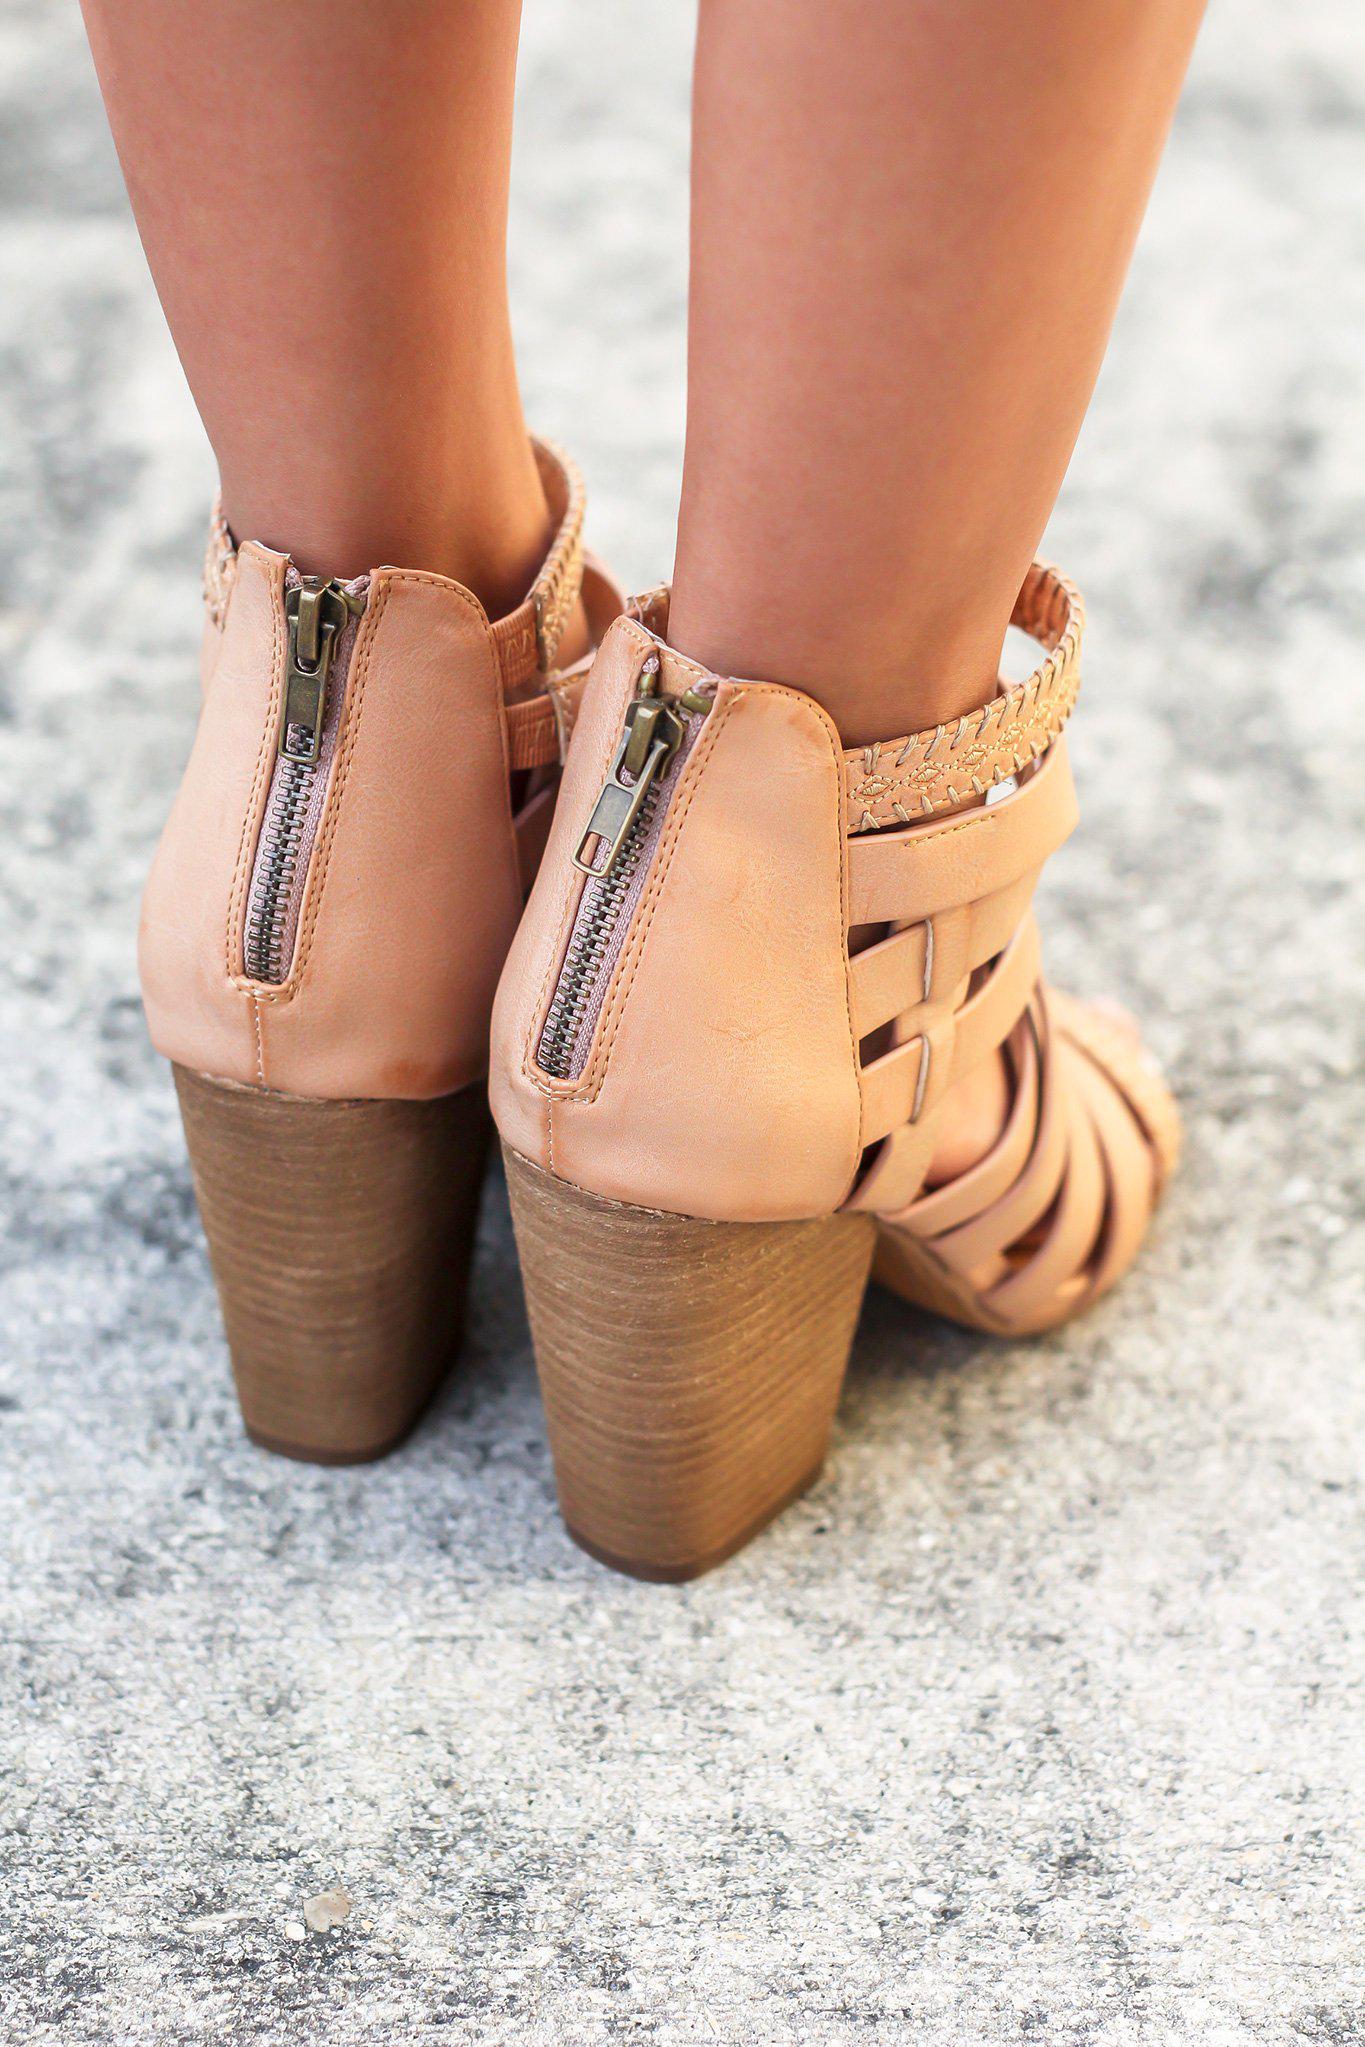 Cute Heels